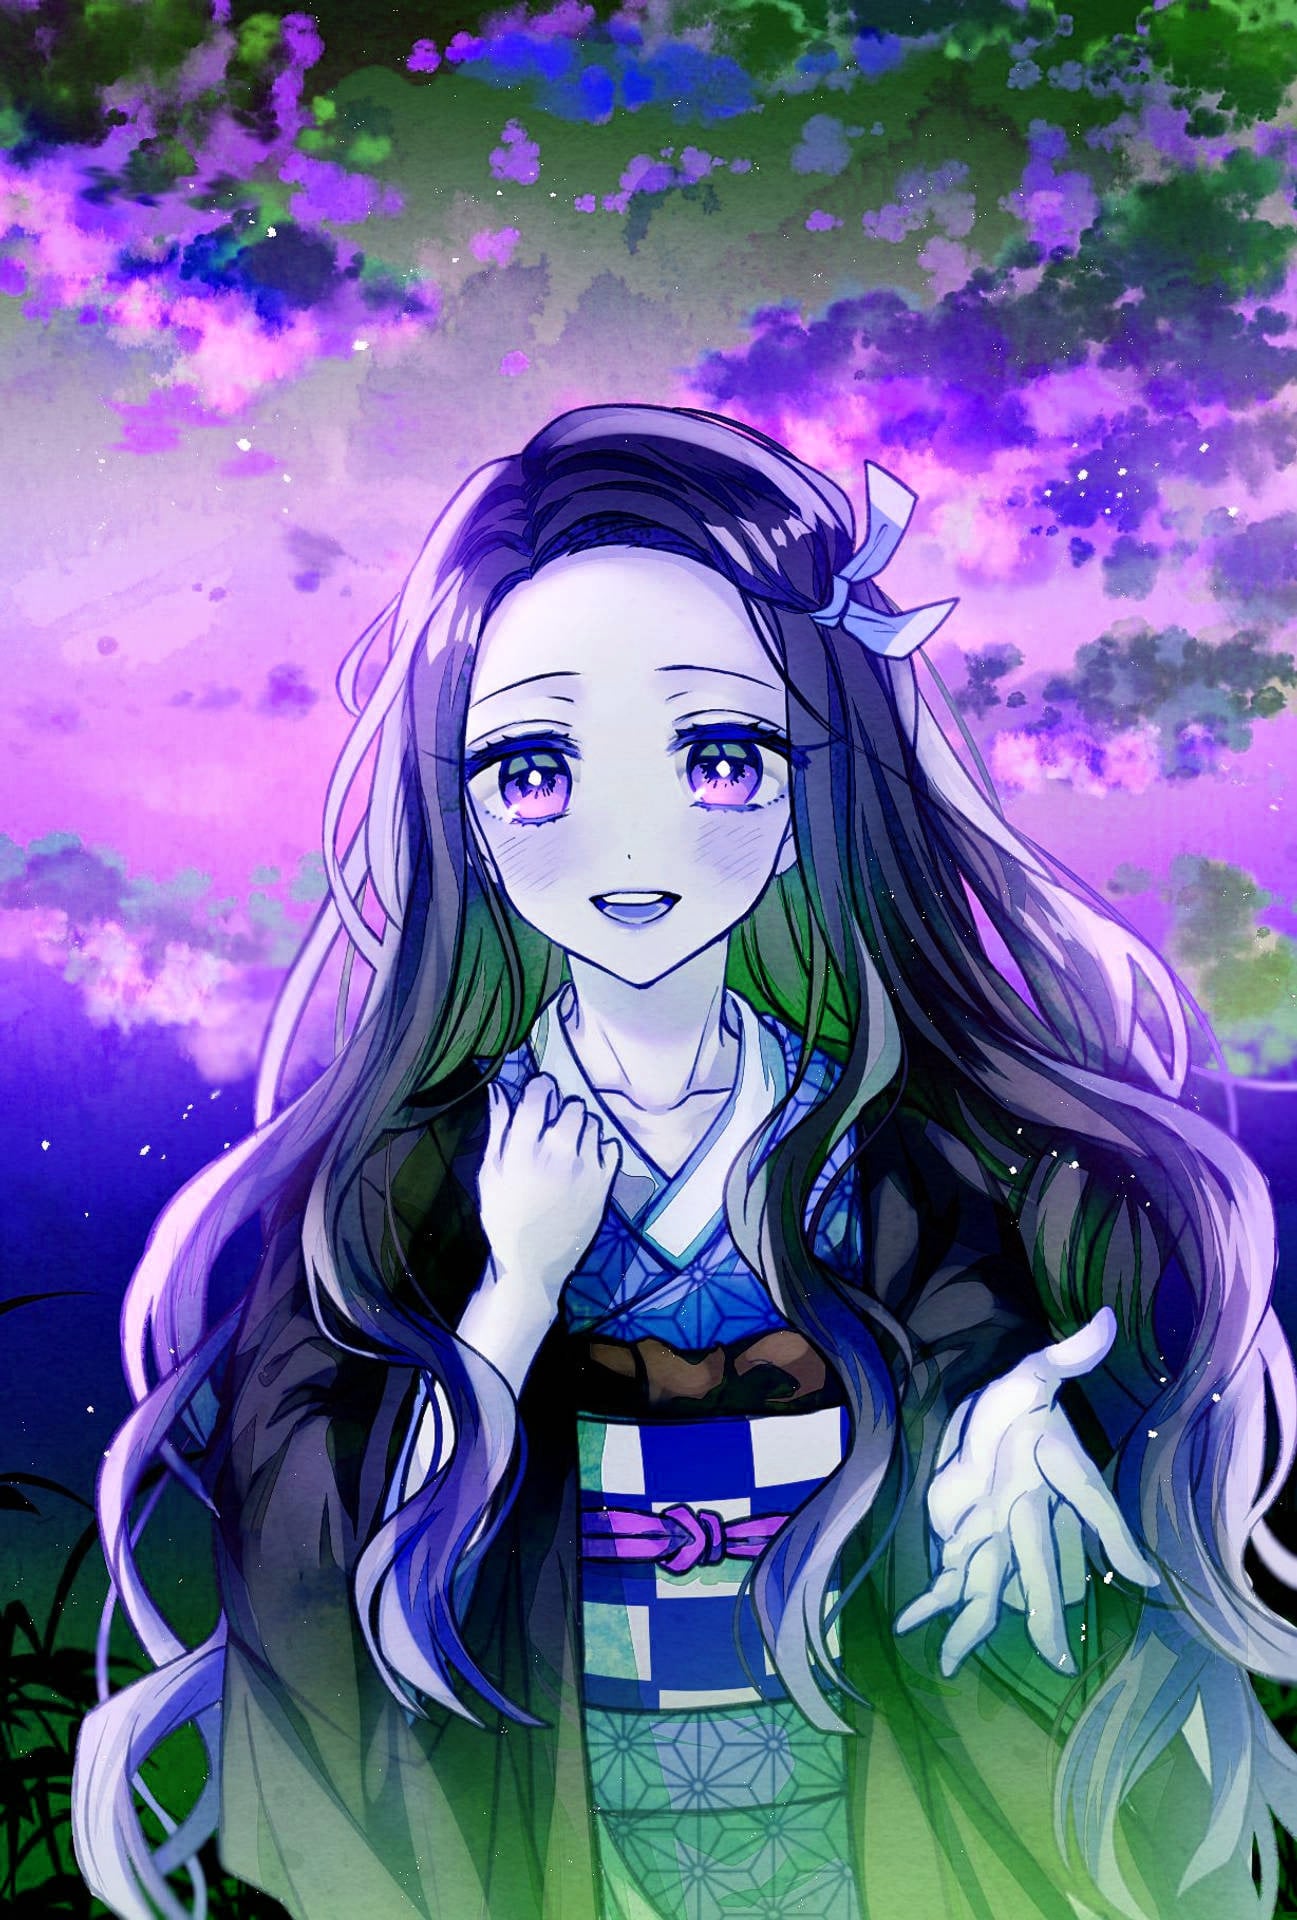 Nezuko Wallpaper - một trong những hình nền rực rỡ nhất của Anime! Hứa hẹn sẽ mang đến cho bạn sự xốn xao với hình ảnh Nezuko Kamado đáng yêu. Với bộ đồ màu hồng và xanh, Nezuko đang ngồi trên một trang điểm Anime cực kỳ đáng yêu.